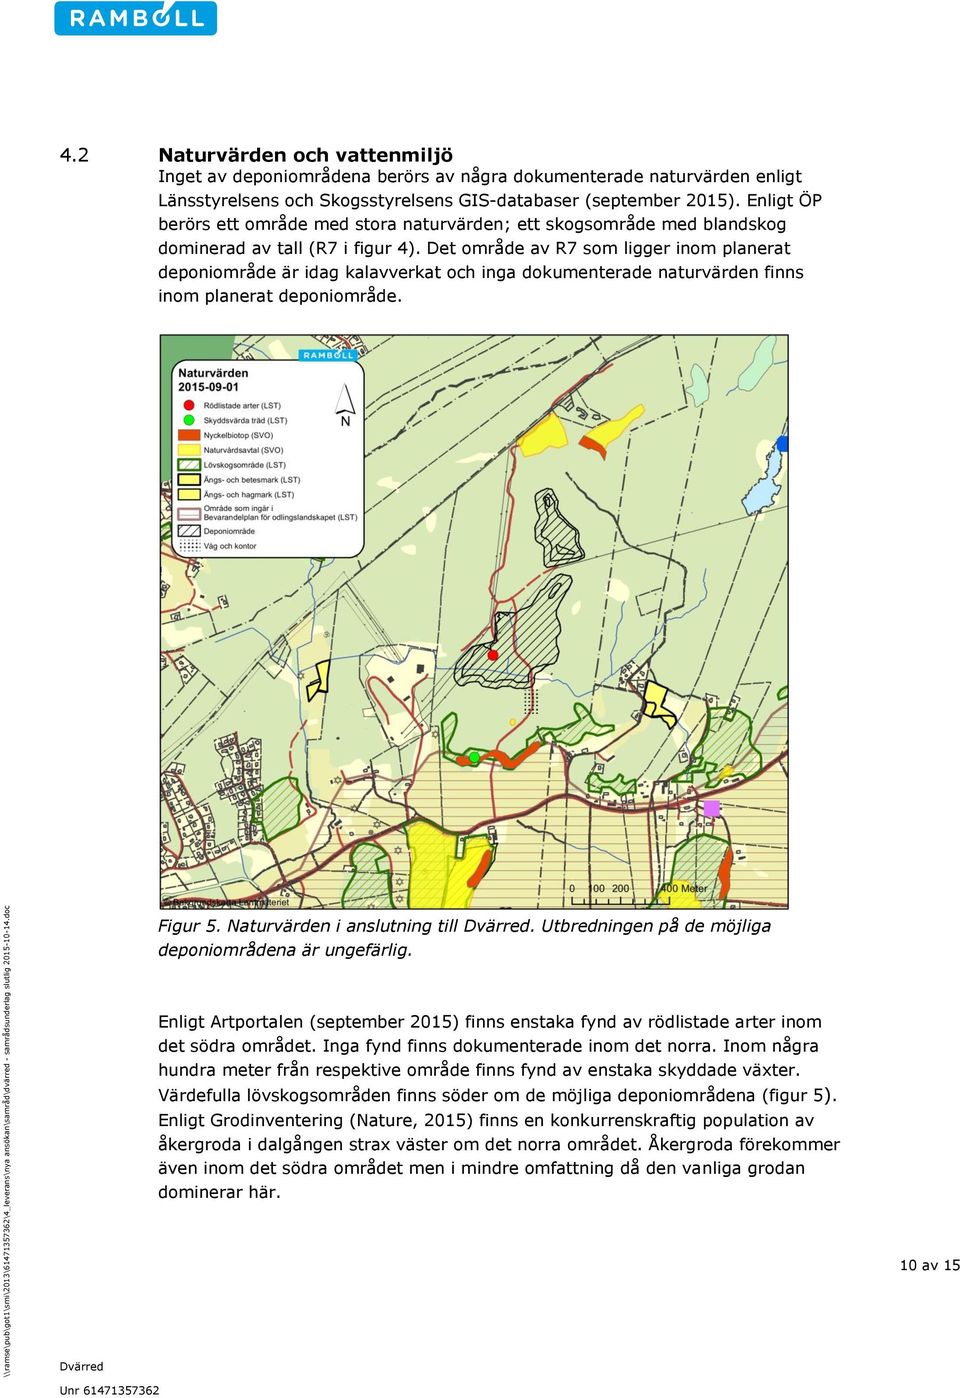 Det område av R7 som ligger inom planerat deponiområde är idag kalavverkat och inga dokumenterade naturvärden finns inom planerat deponiområde. Figur 5. Naturvärden i anslutning till.